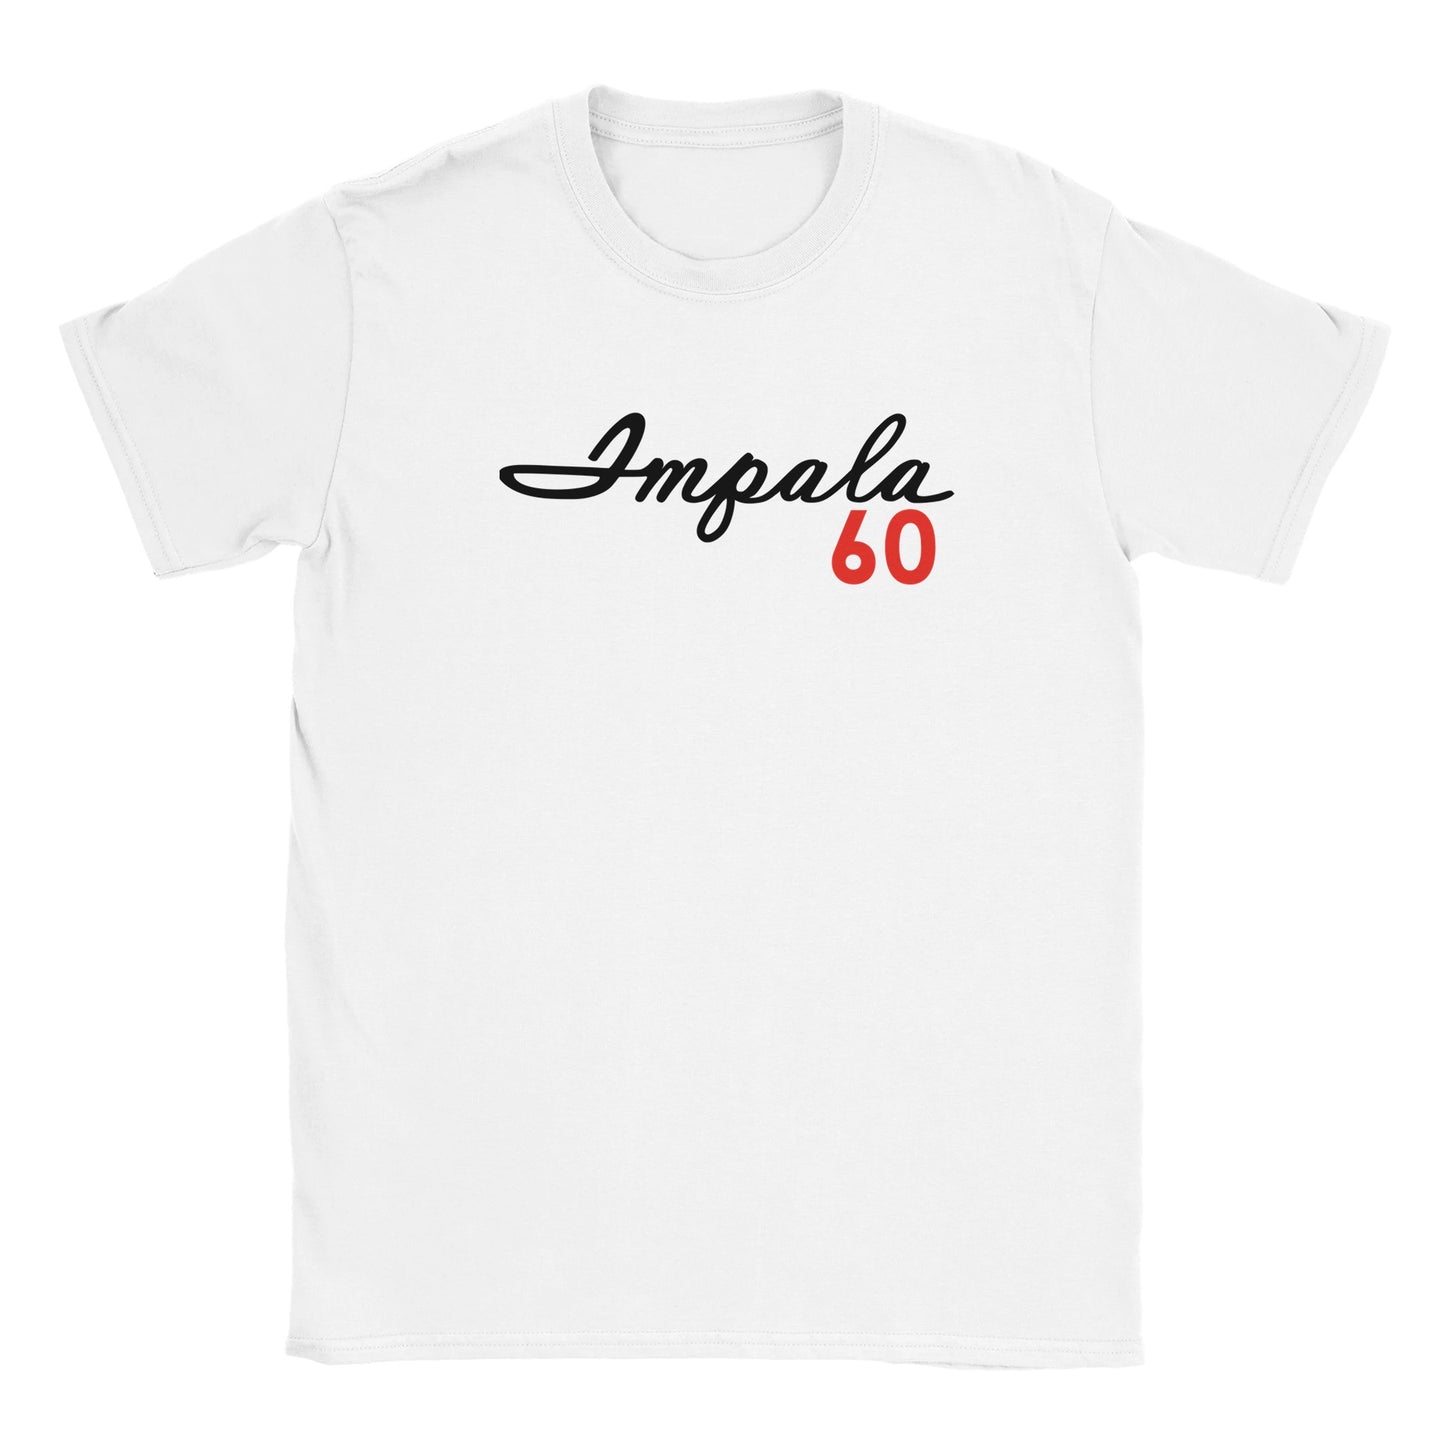 60 Impala T-shirt - Mister Snarky's